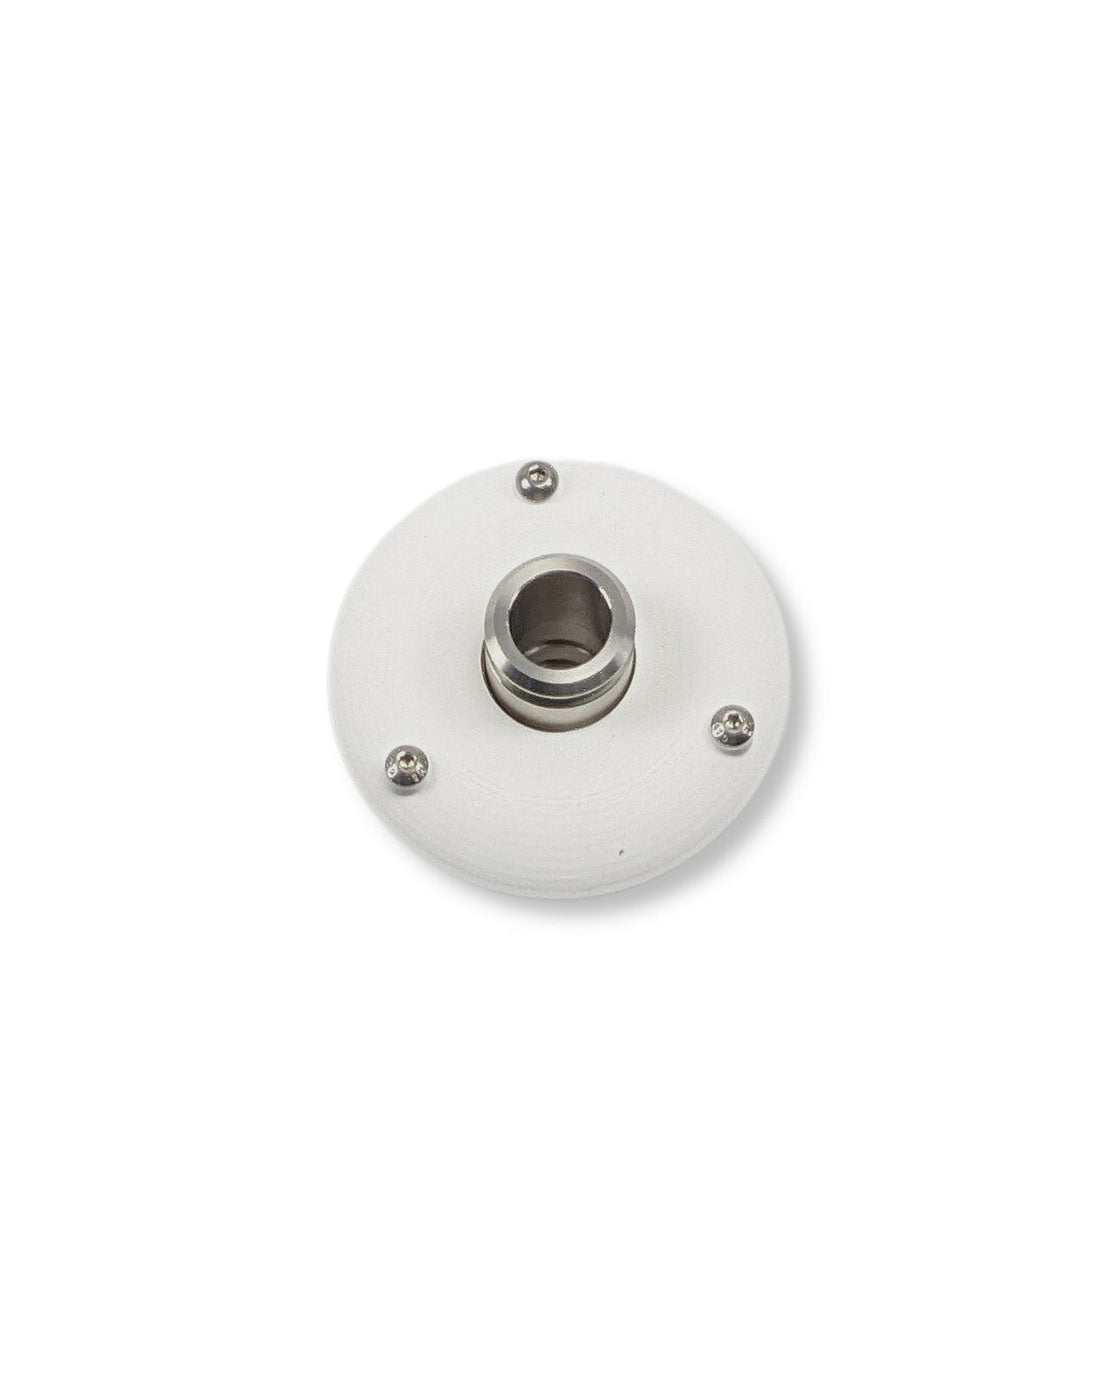 Ein weißer runder Knopf auf einer weißen Oberfläche, der als Teil des PURION IBC Universal 90W OTC SPL BS von der UV Concept GmbH verwendet wird, um trübem Wasser und Verkeimungen vorzubeugen.